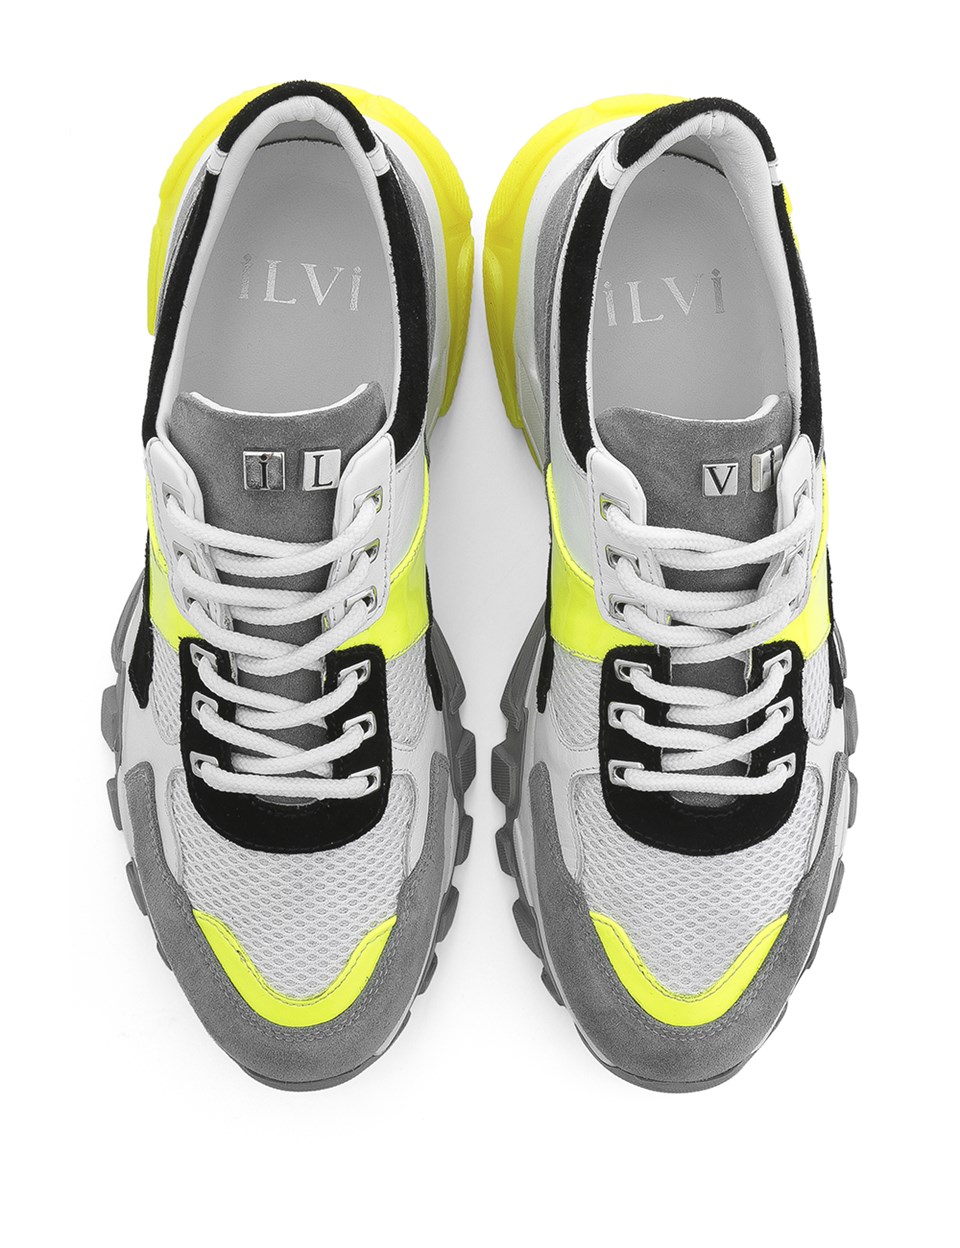 Carlotta Erkek Spor Ayakkabı Gri-Beyaz-Neon - İLVİ